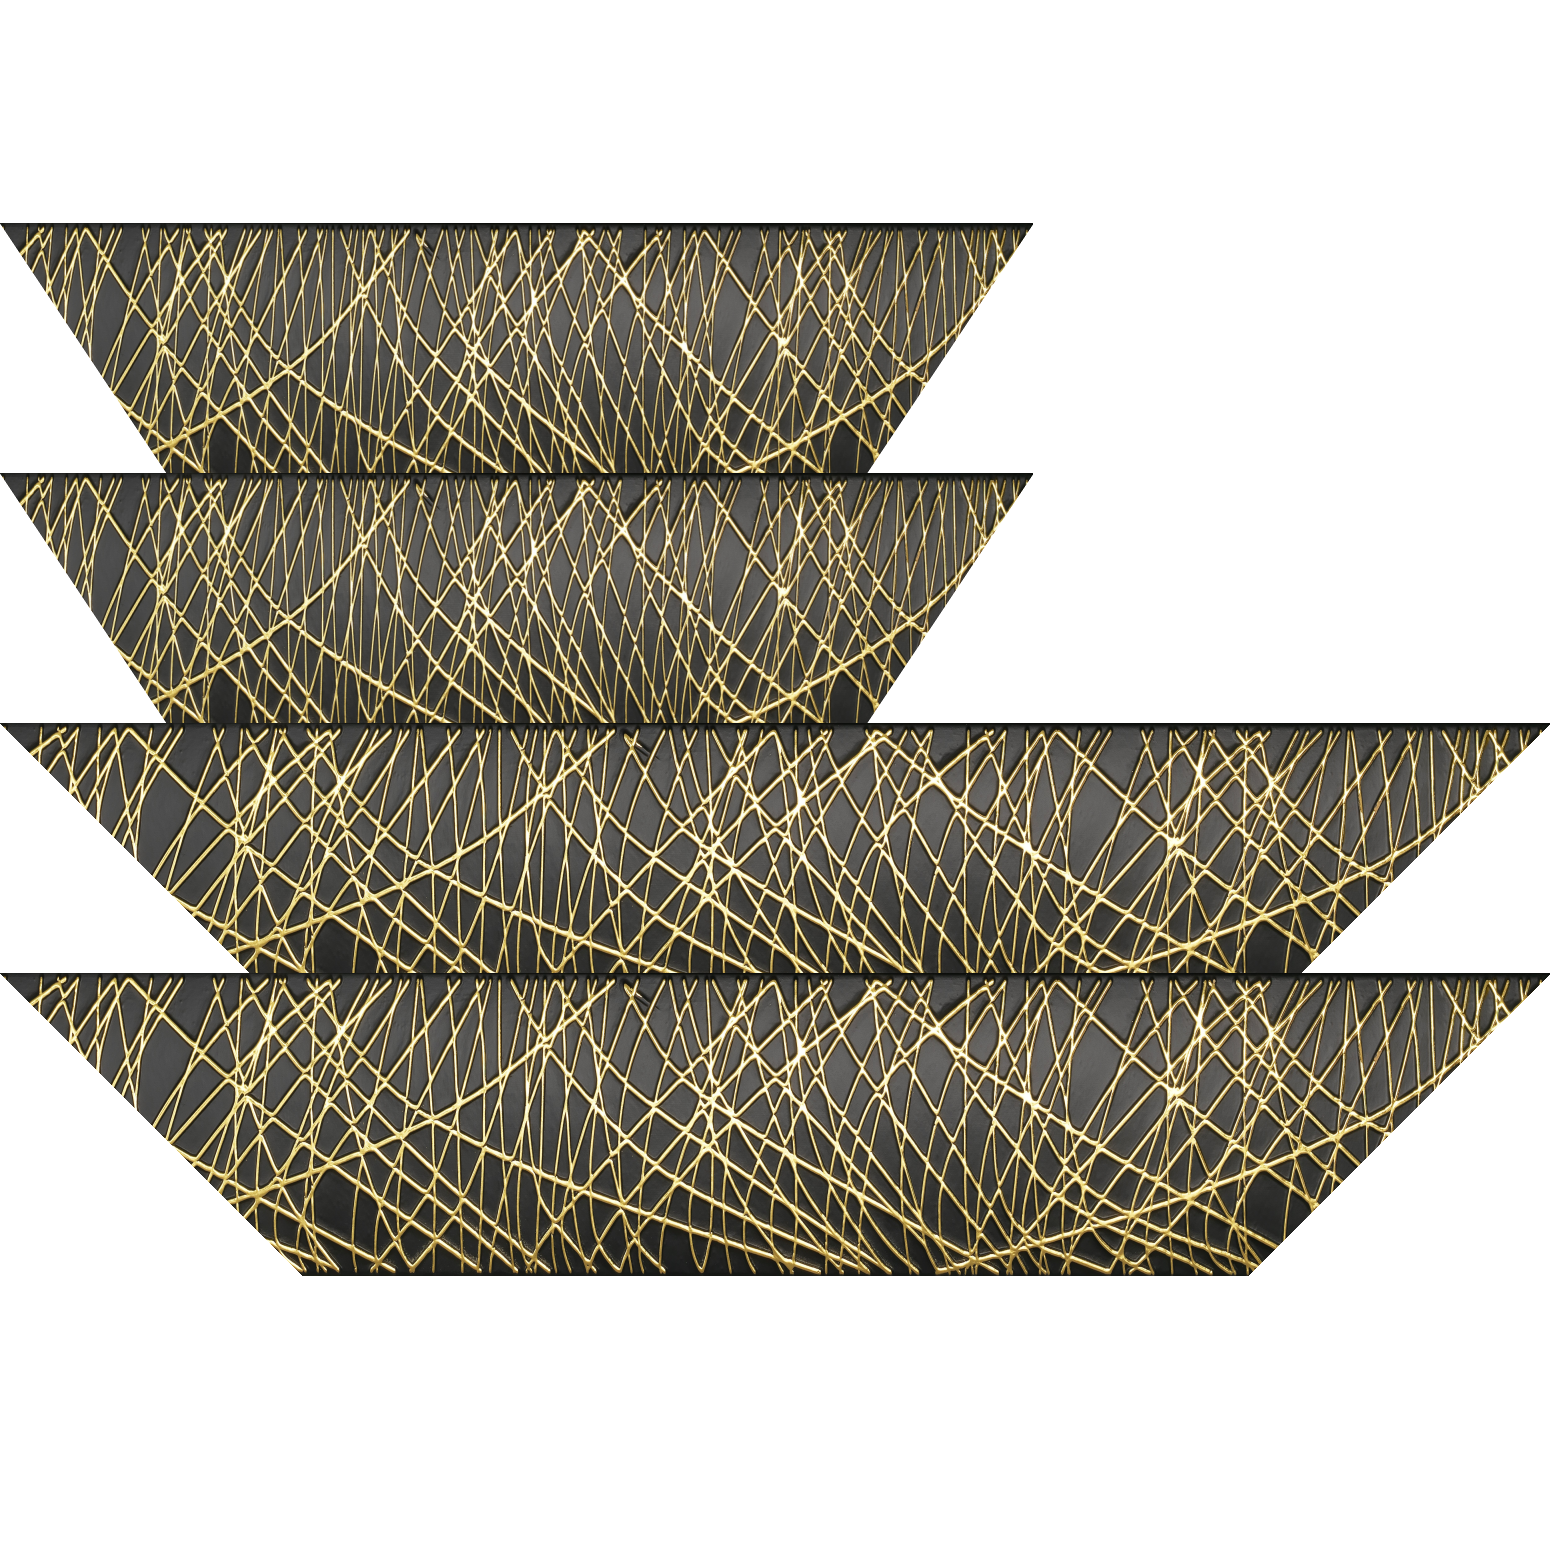 Baguette bois profil arrondi méplat largeur 9.9cm couleur noir satiné trait or en relief - 70x100